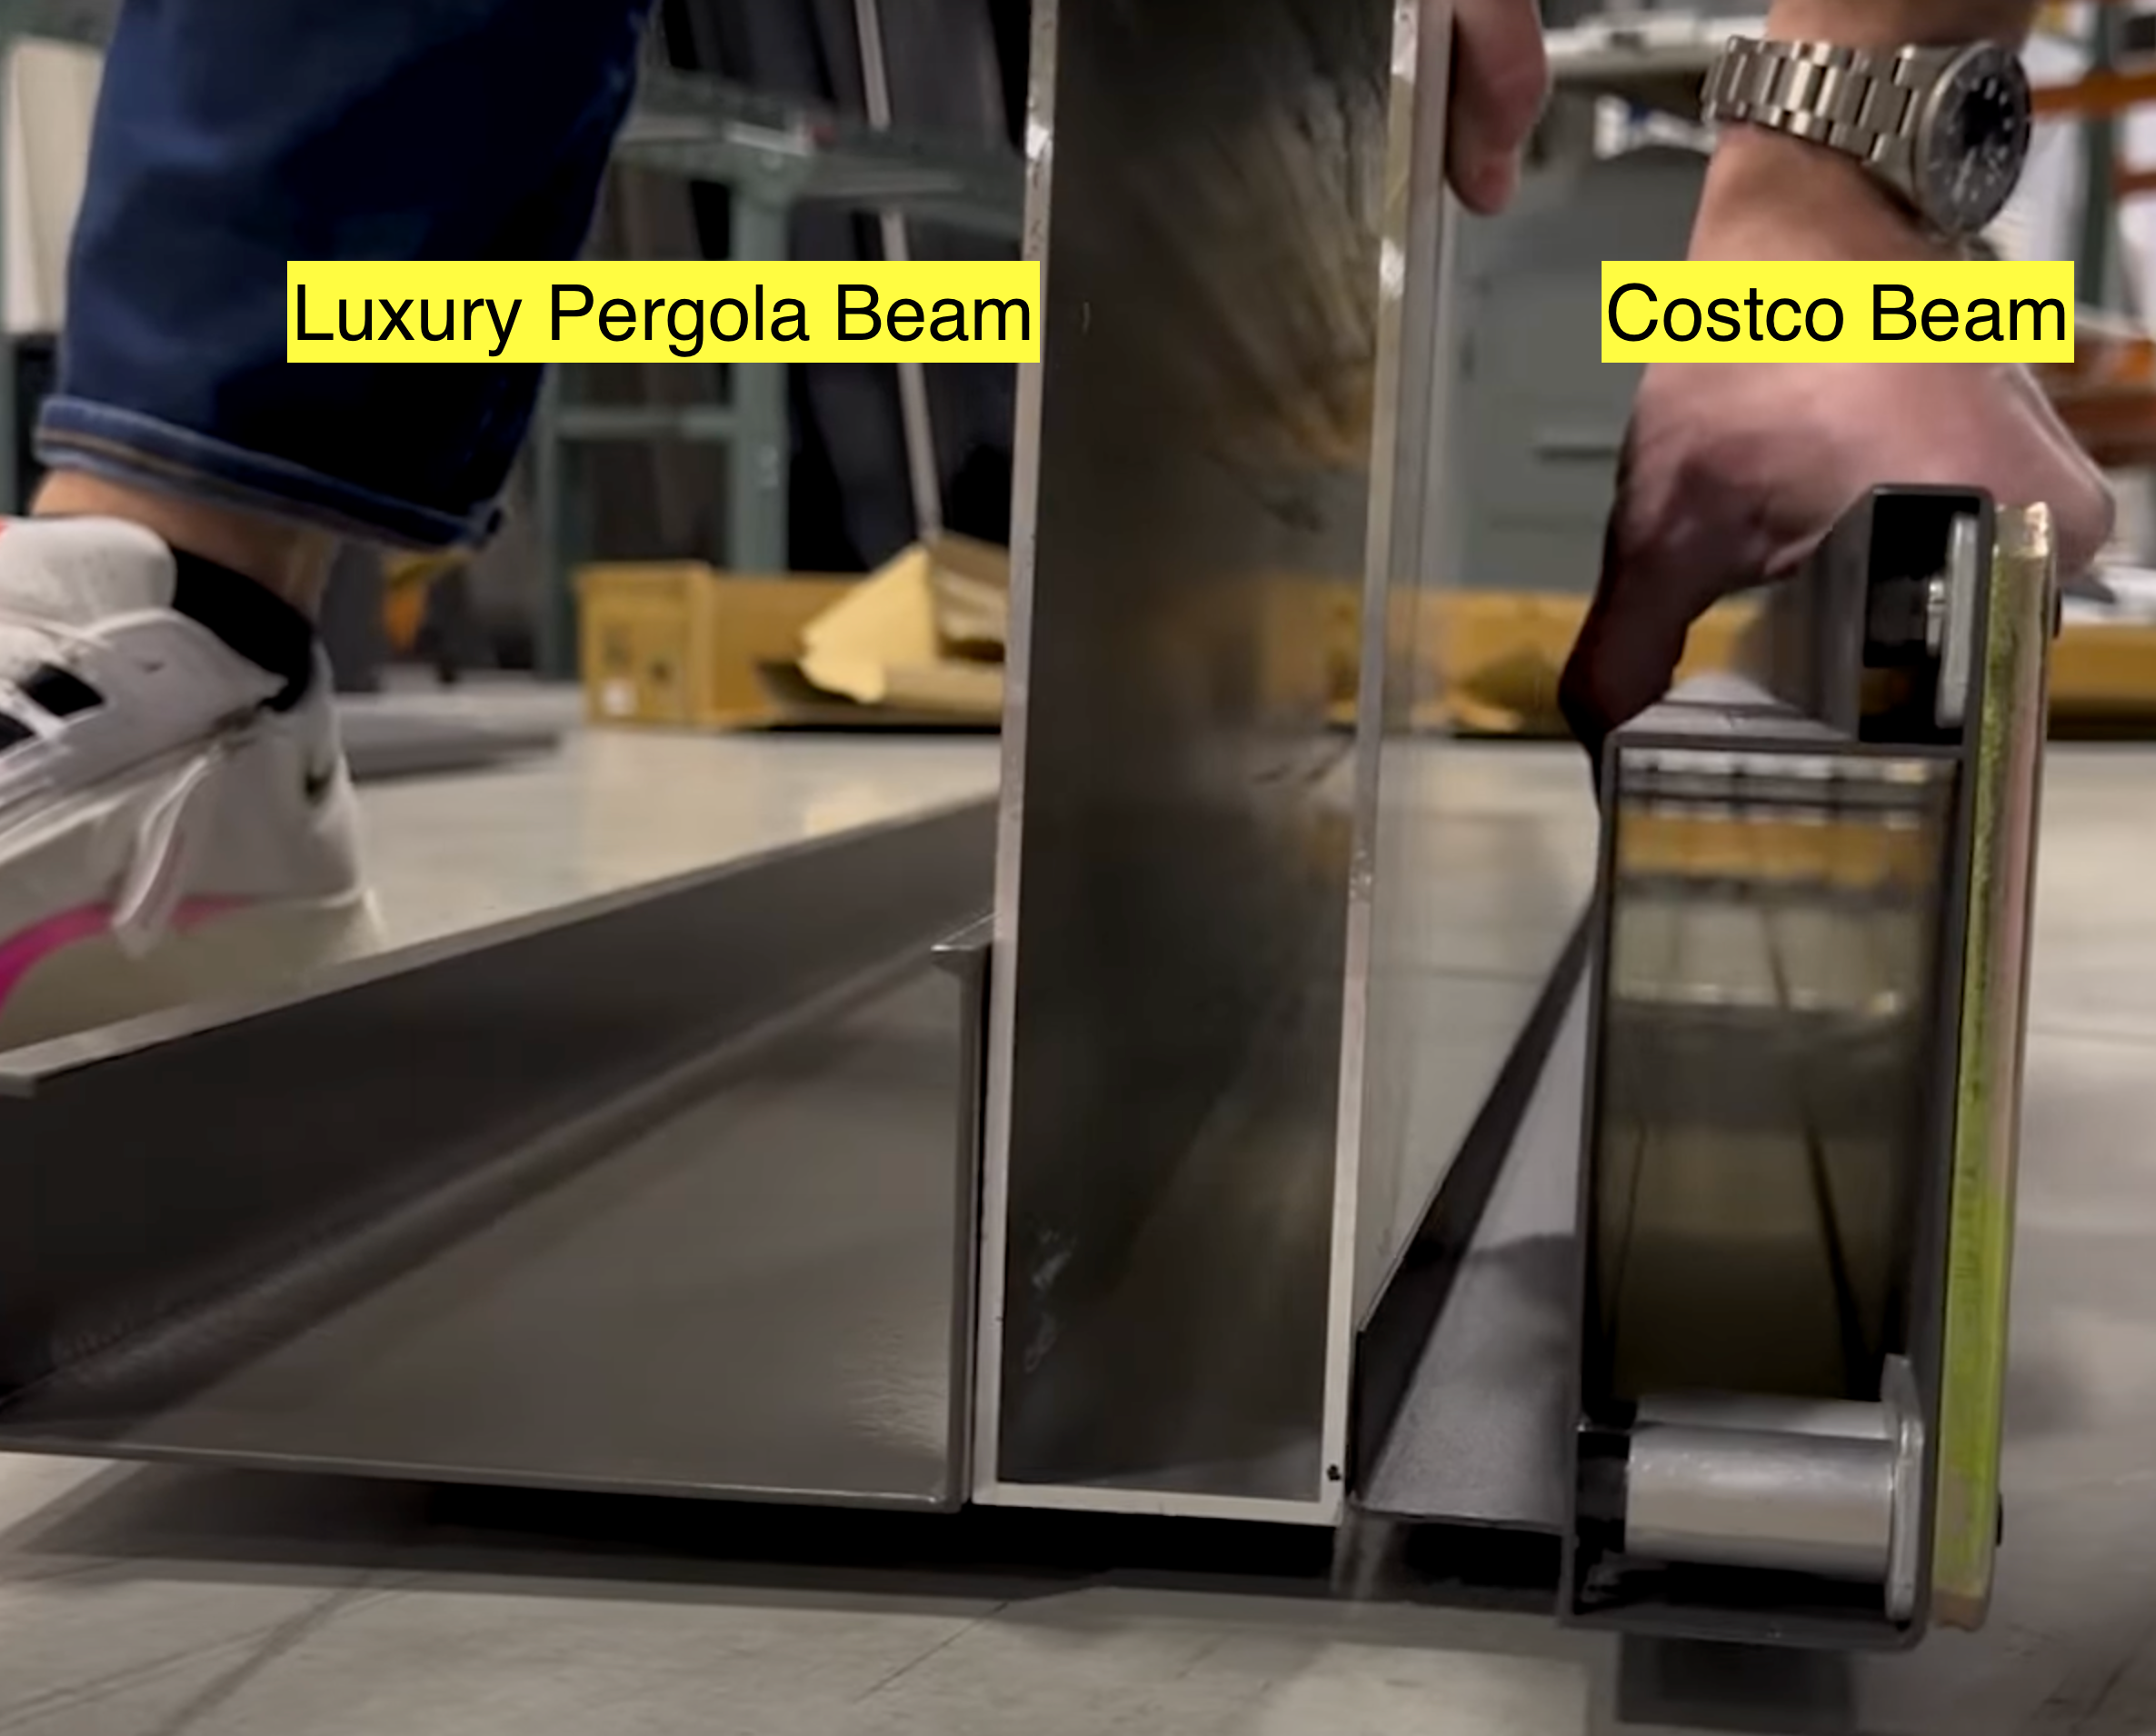 Costco pergolas beam compared to Luxury Pergola